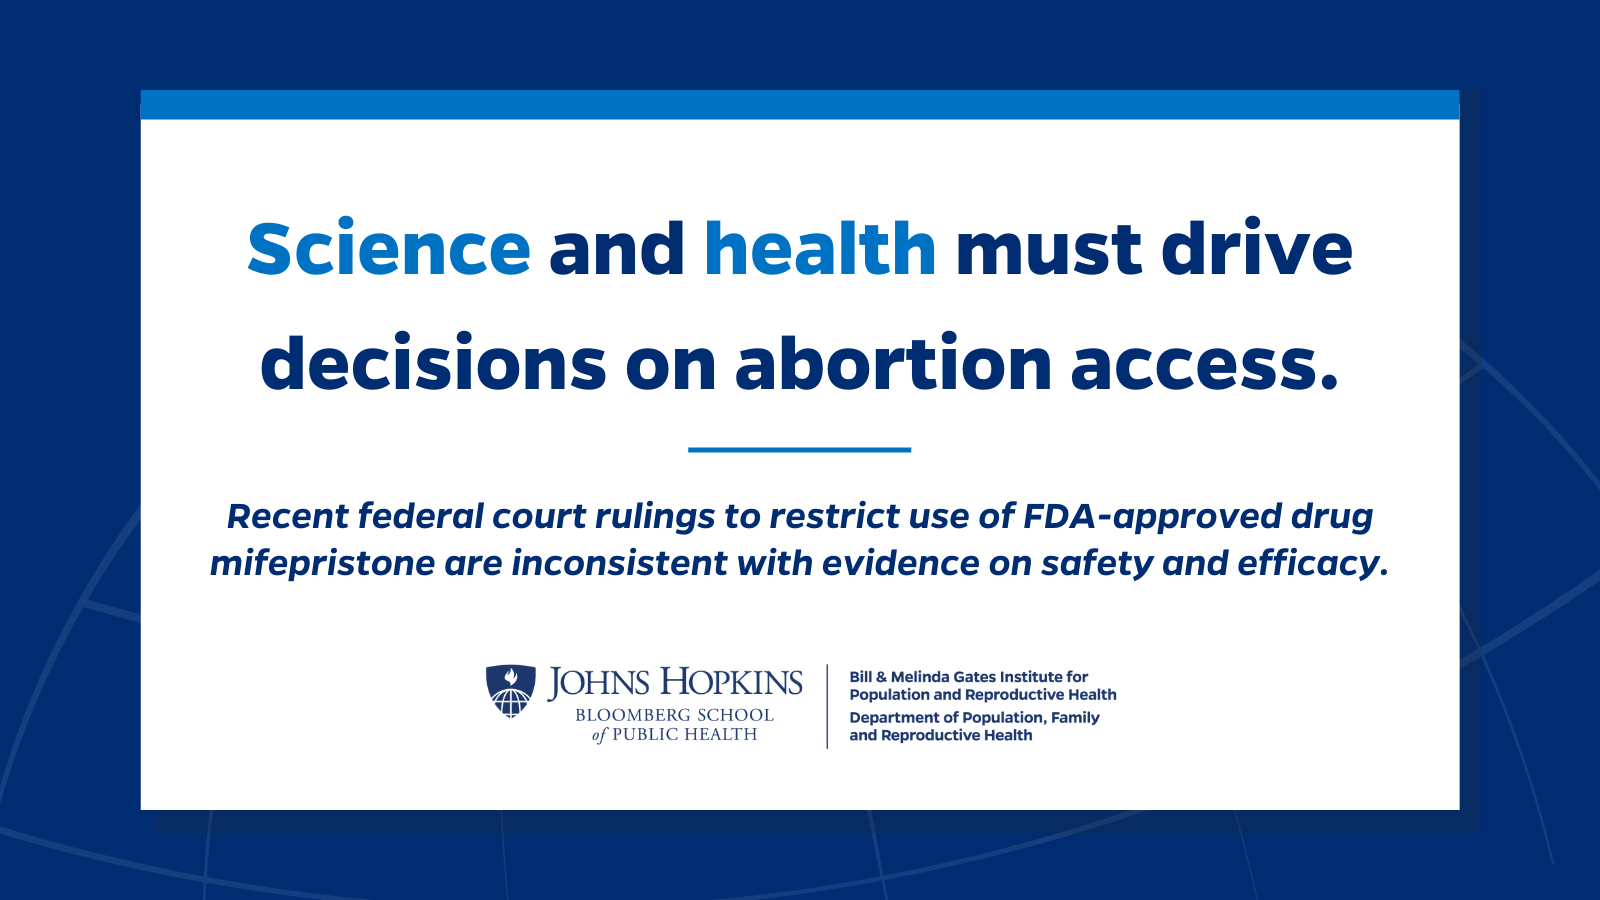 La ciencia y la salud deben guiar las decisiones sobre el acceso al aborto